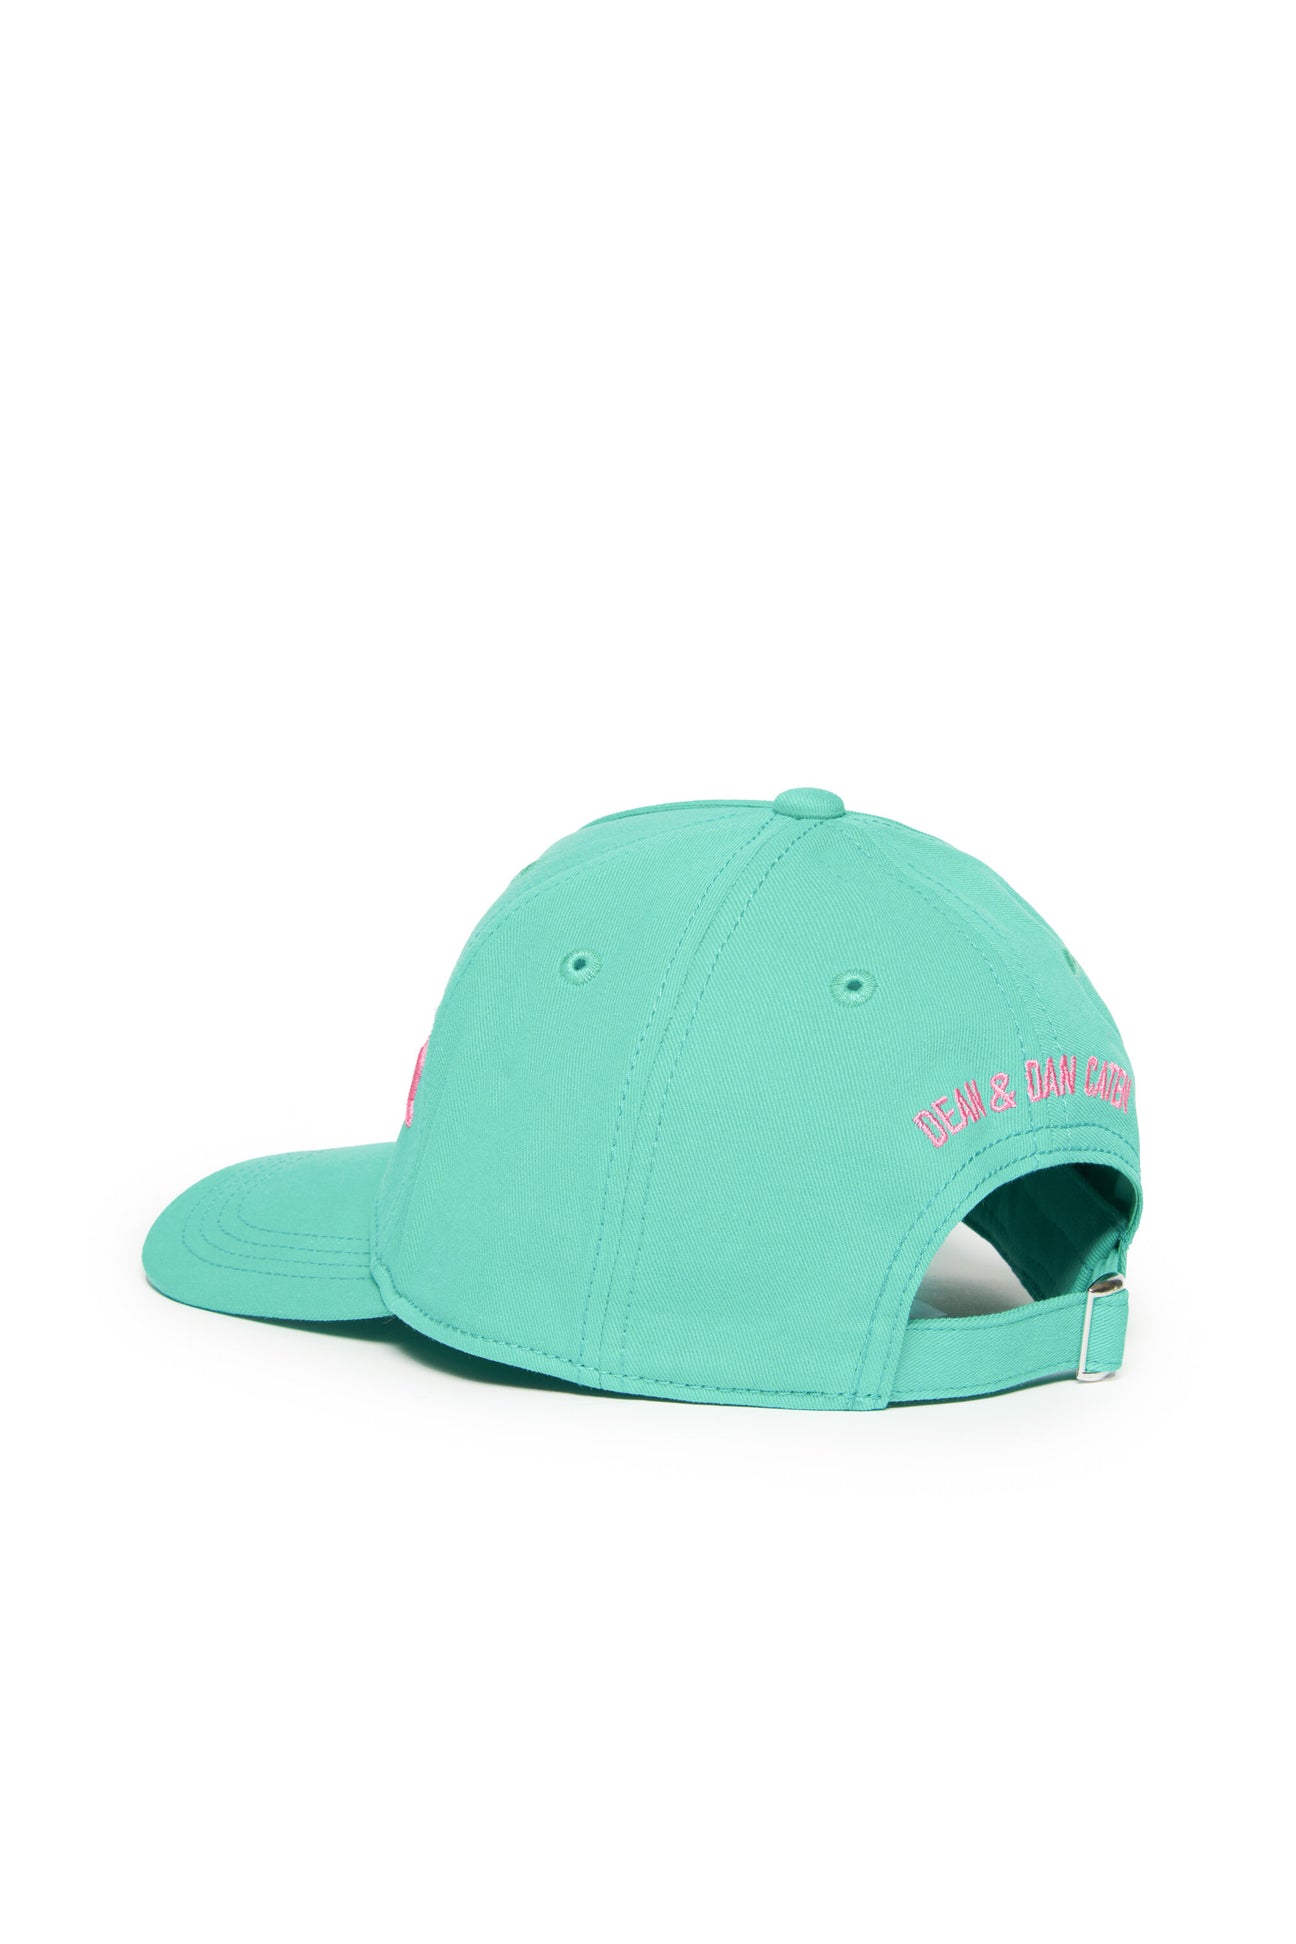 Branded baseball cap Branded baseball cap